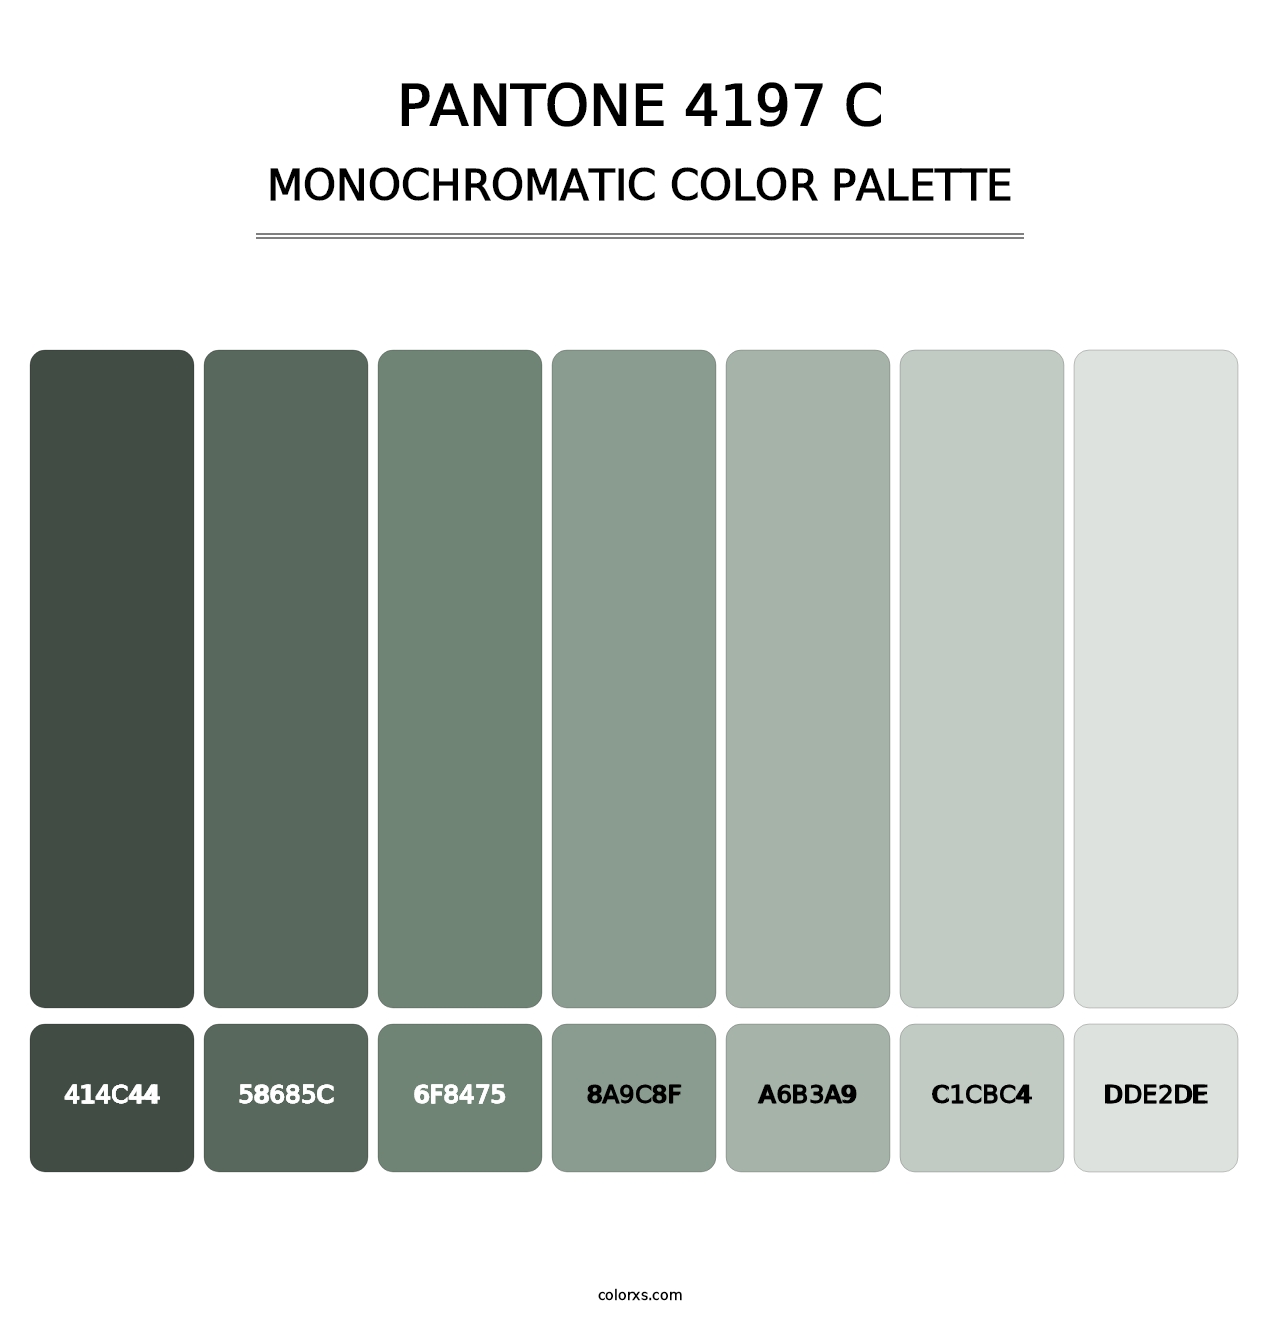 PANTONE 4197 C - Monochromatic Color Palette